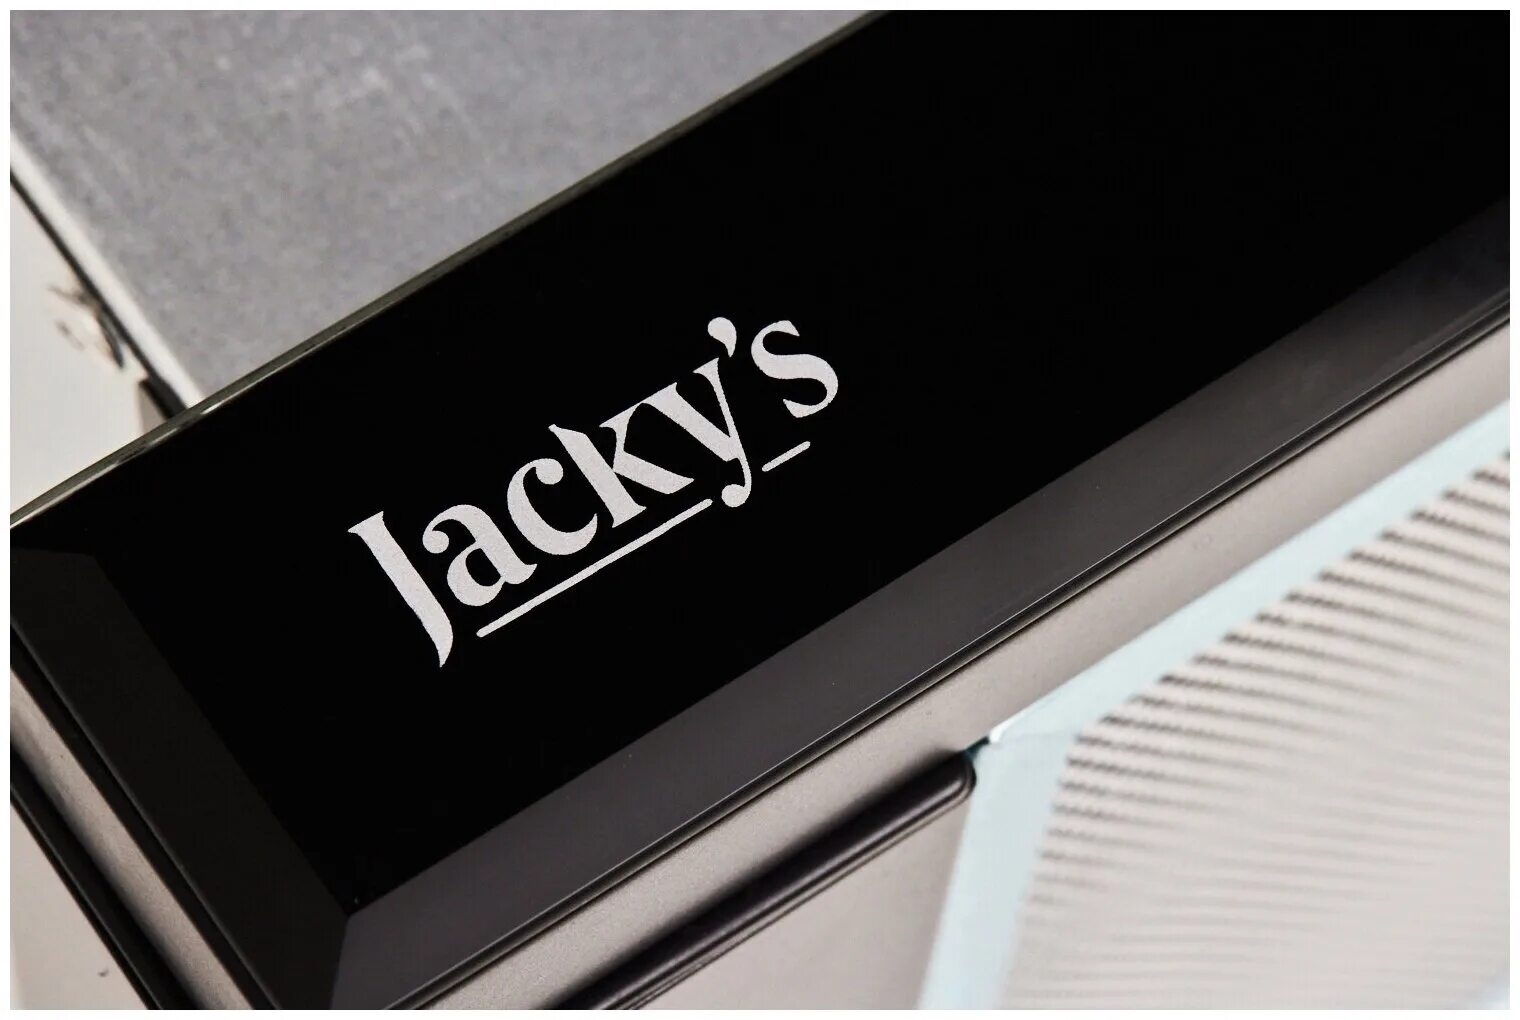 Jacky s отзывы. Вытяжка Jacky`s JV bb982. Jacky's JV bw684. Вытяжка встр. Jacky's JV bb682. Вытяжка Jacky's JV bb682.